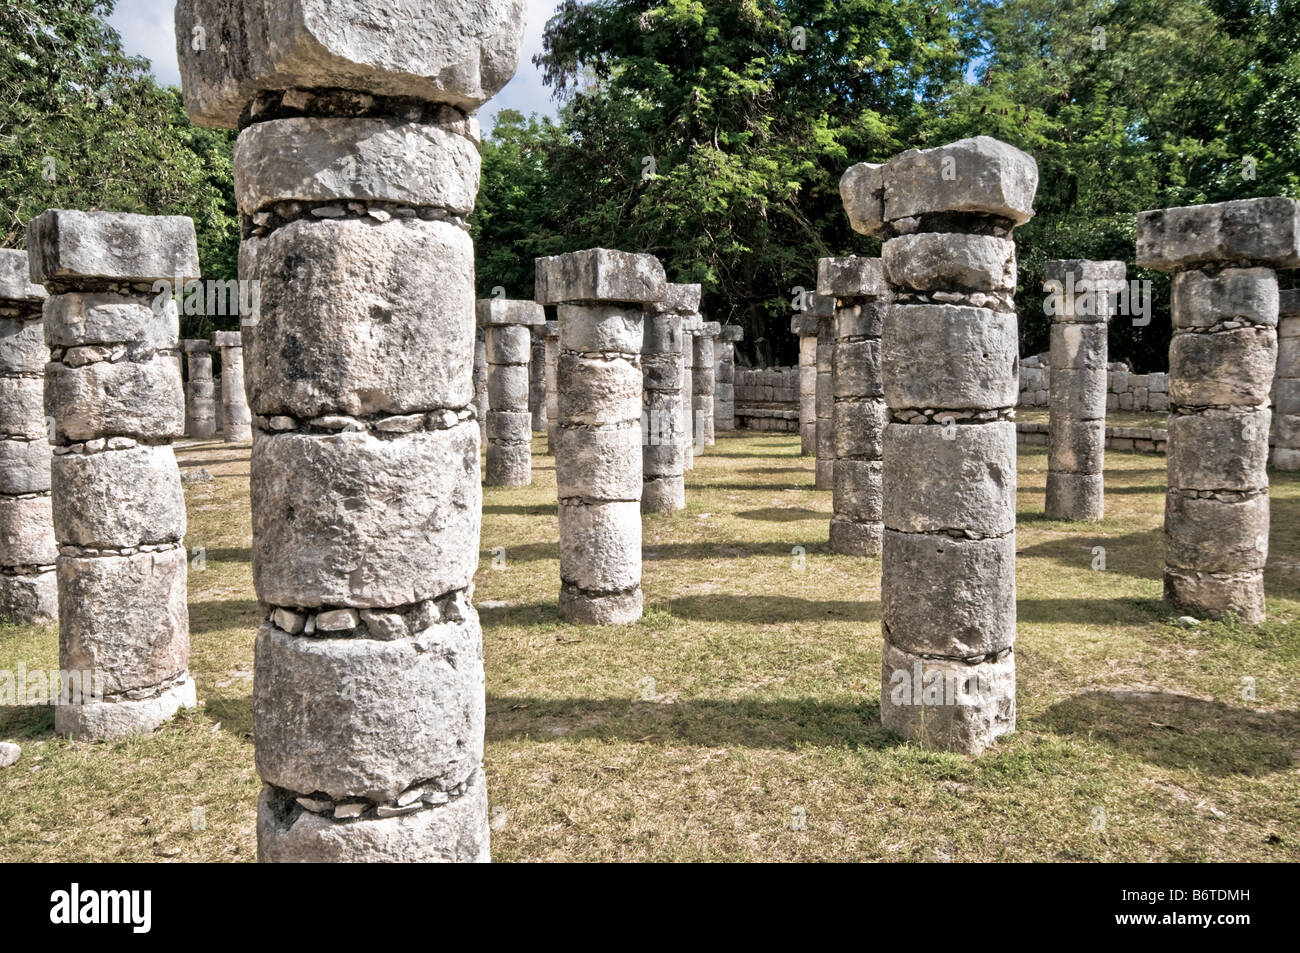 CHICHEN ITZA, Mexique - ruines mayas anciennes à Chichen Itza, Yucatan, Mexique. Chichen Itza, situé sur la péninsule du Yucatan au Mexique, est un site archéologique important présentant la riche histoire et les connaissances scientifiques avancées de la civilisation maya antique. Il est plus connu pour la Pyramide Kukulkan, ou « El Castillo », une structure à quatre côtés avec 91 marches de chaque côté, culminant en une seule étape au sommet pour représenter les 365 jours de l'année solaire. Banque D'Images